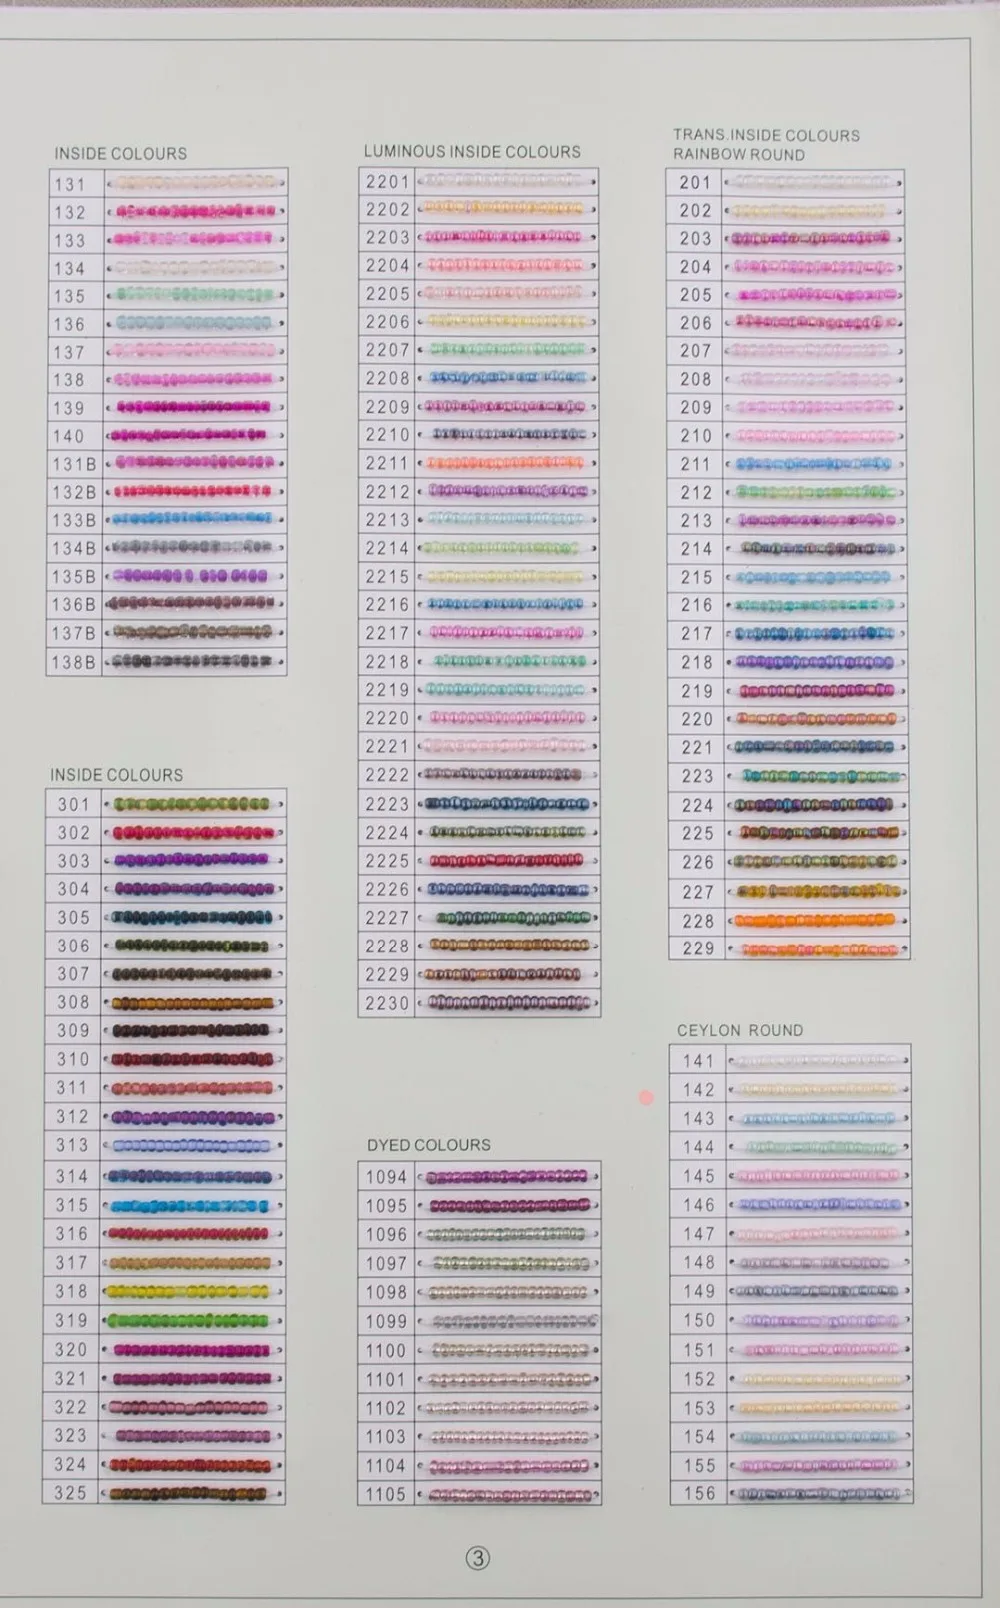 100 Пряди ручной работы из бисера с кисточками капельницы, 7 см в ширину, 30 прядей в пучке, пожалуйста, выберите цвет из таблицы цветов